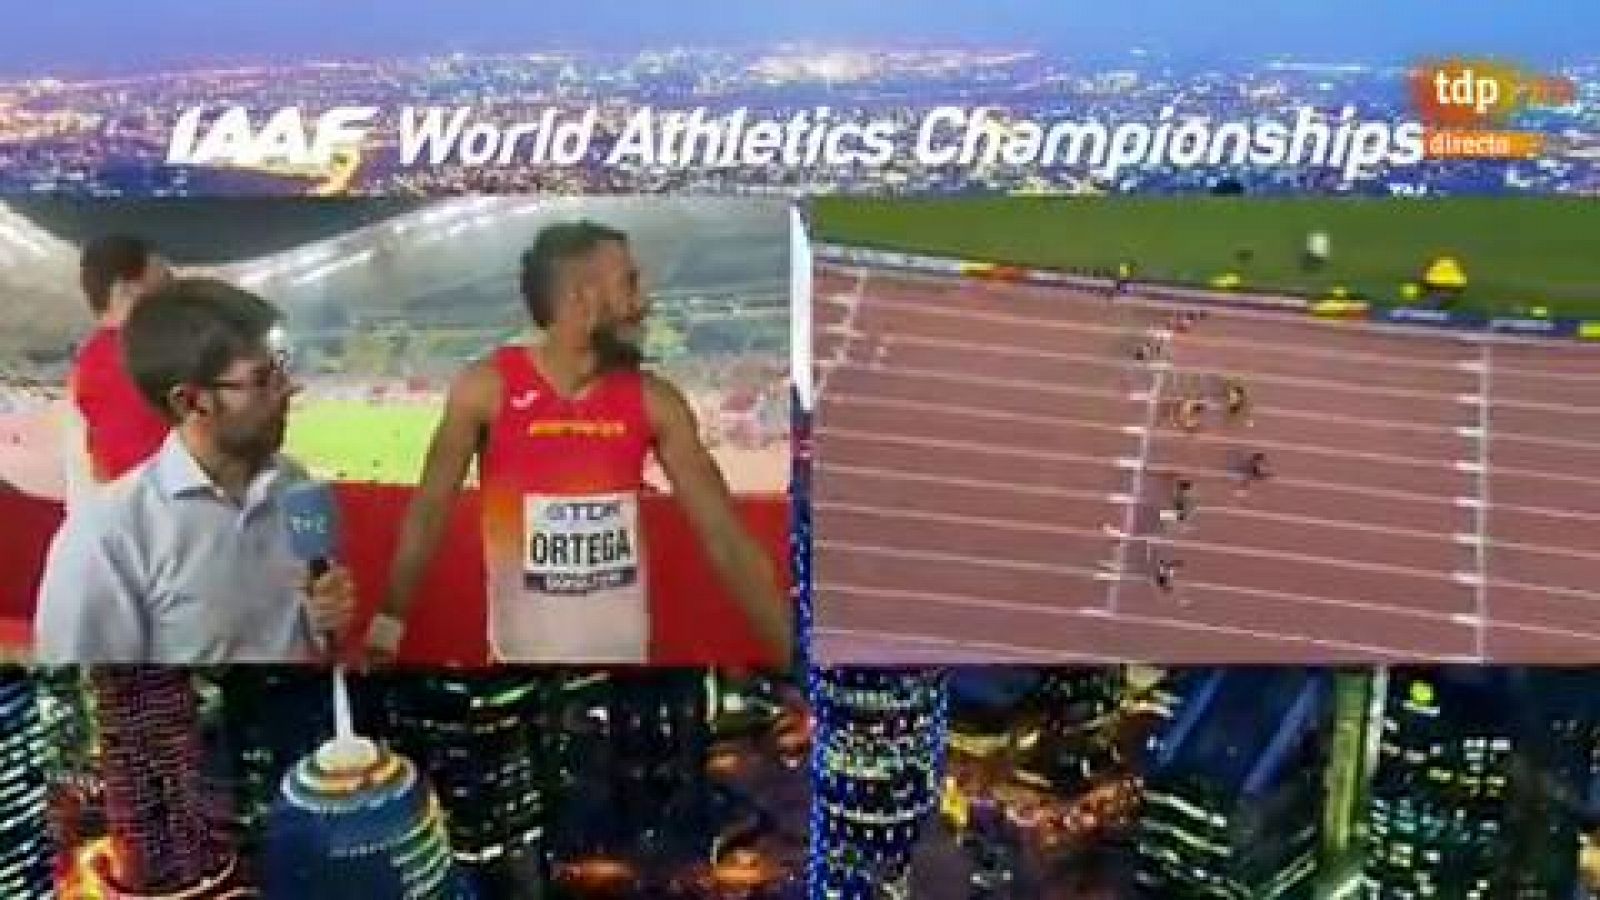 Mundial de atletismo | Orlando Ortega: "Me han robado una medalla"